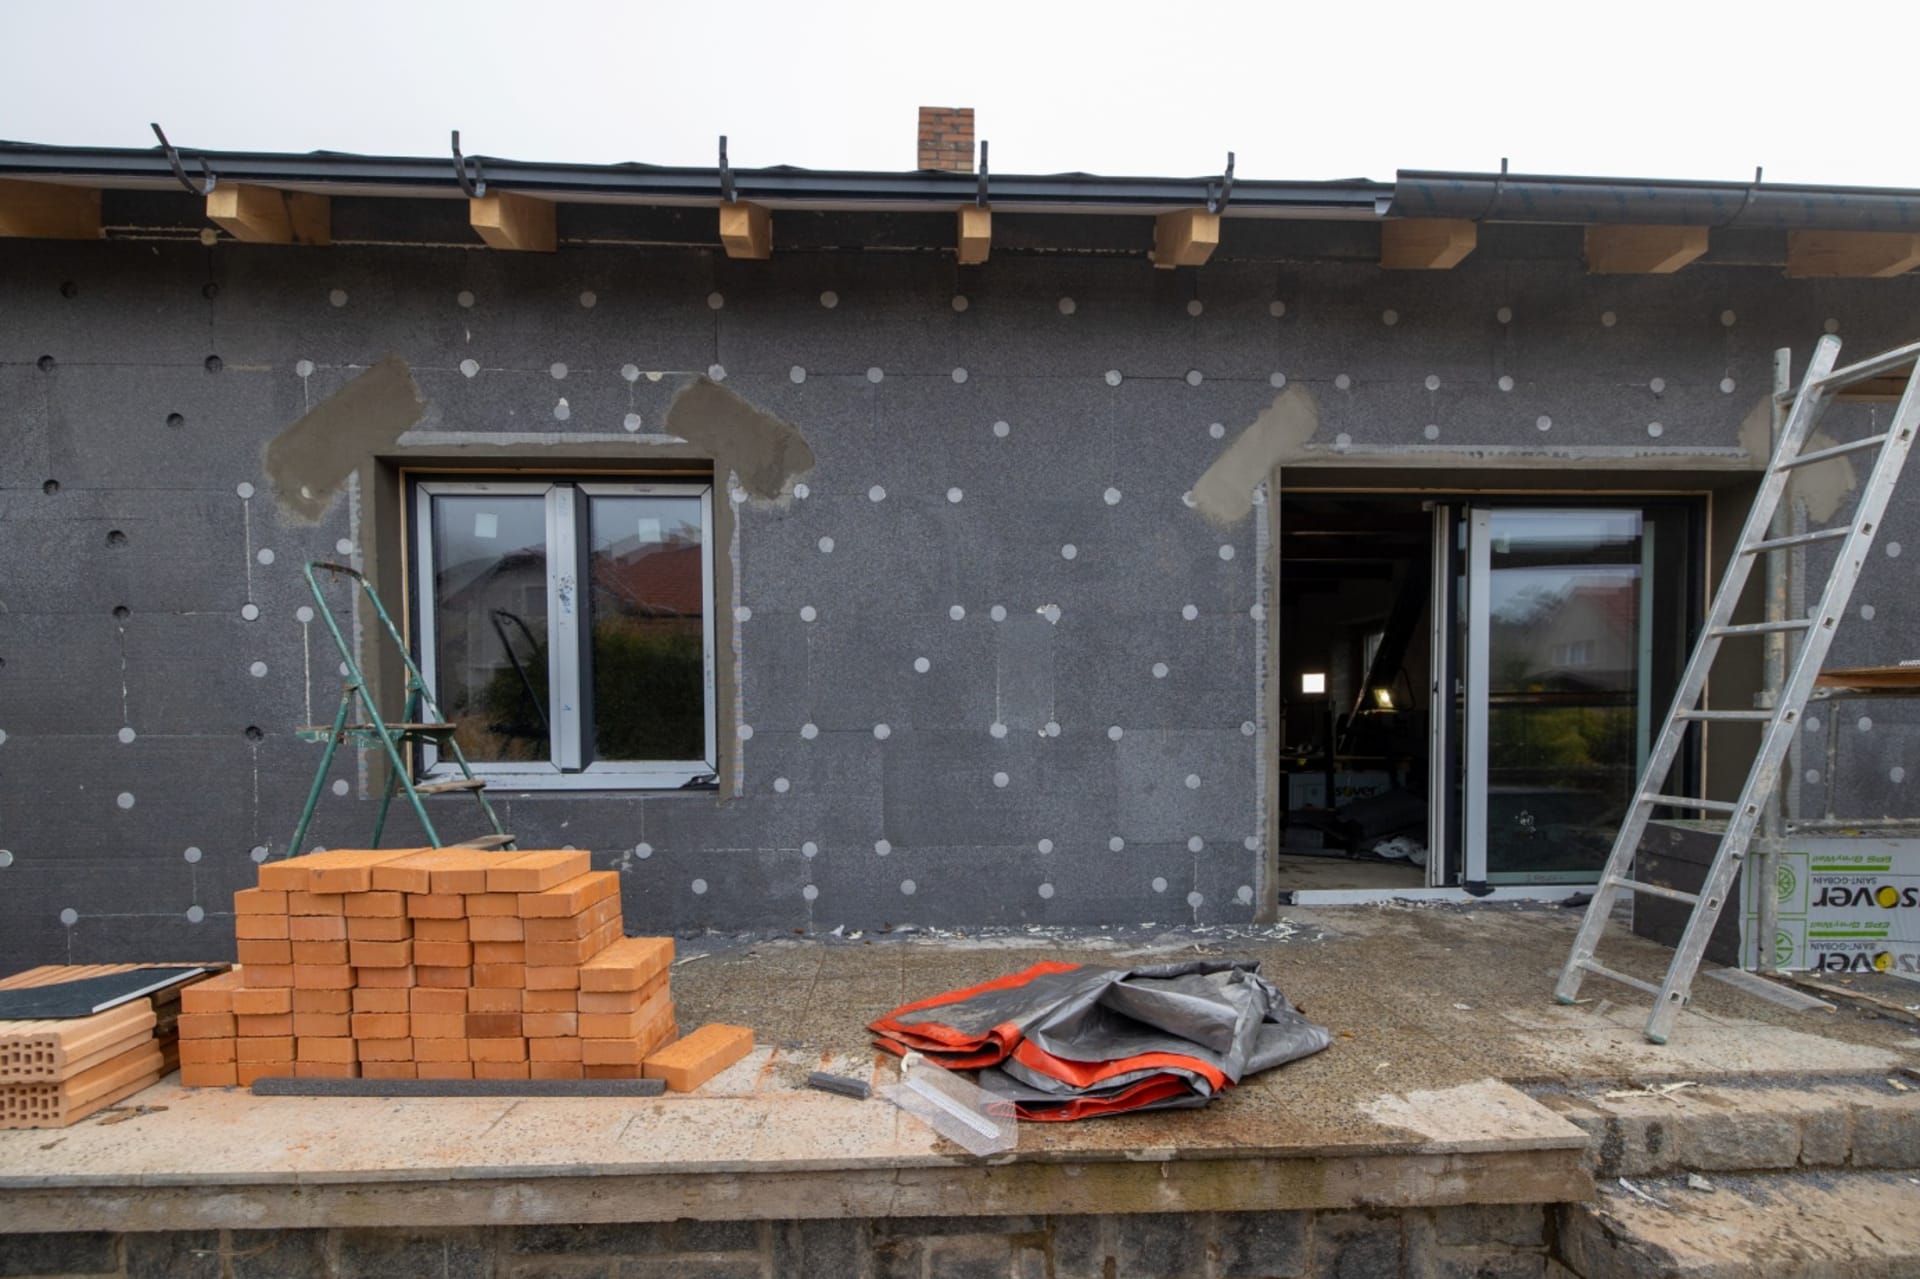 Polystyrenové desky jsou základem nového zateplovacího systému domu